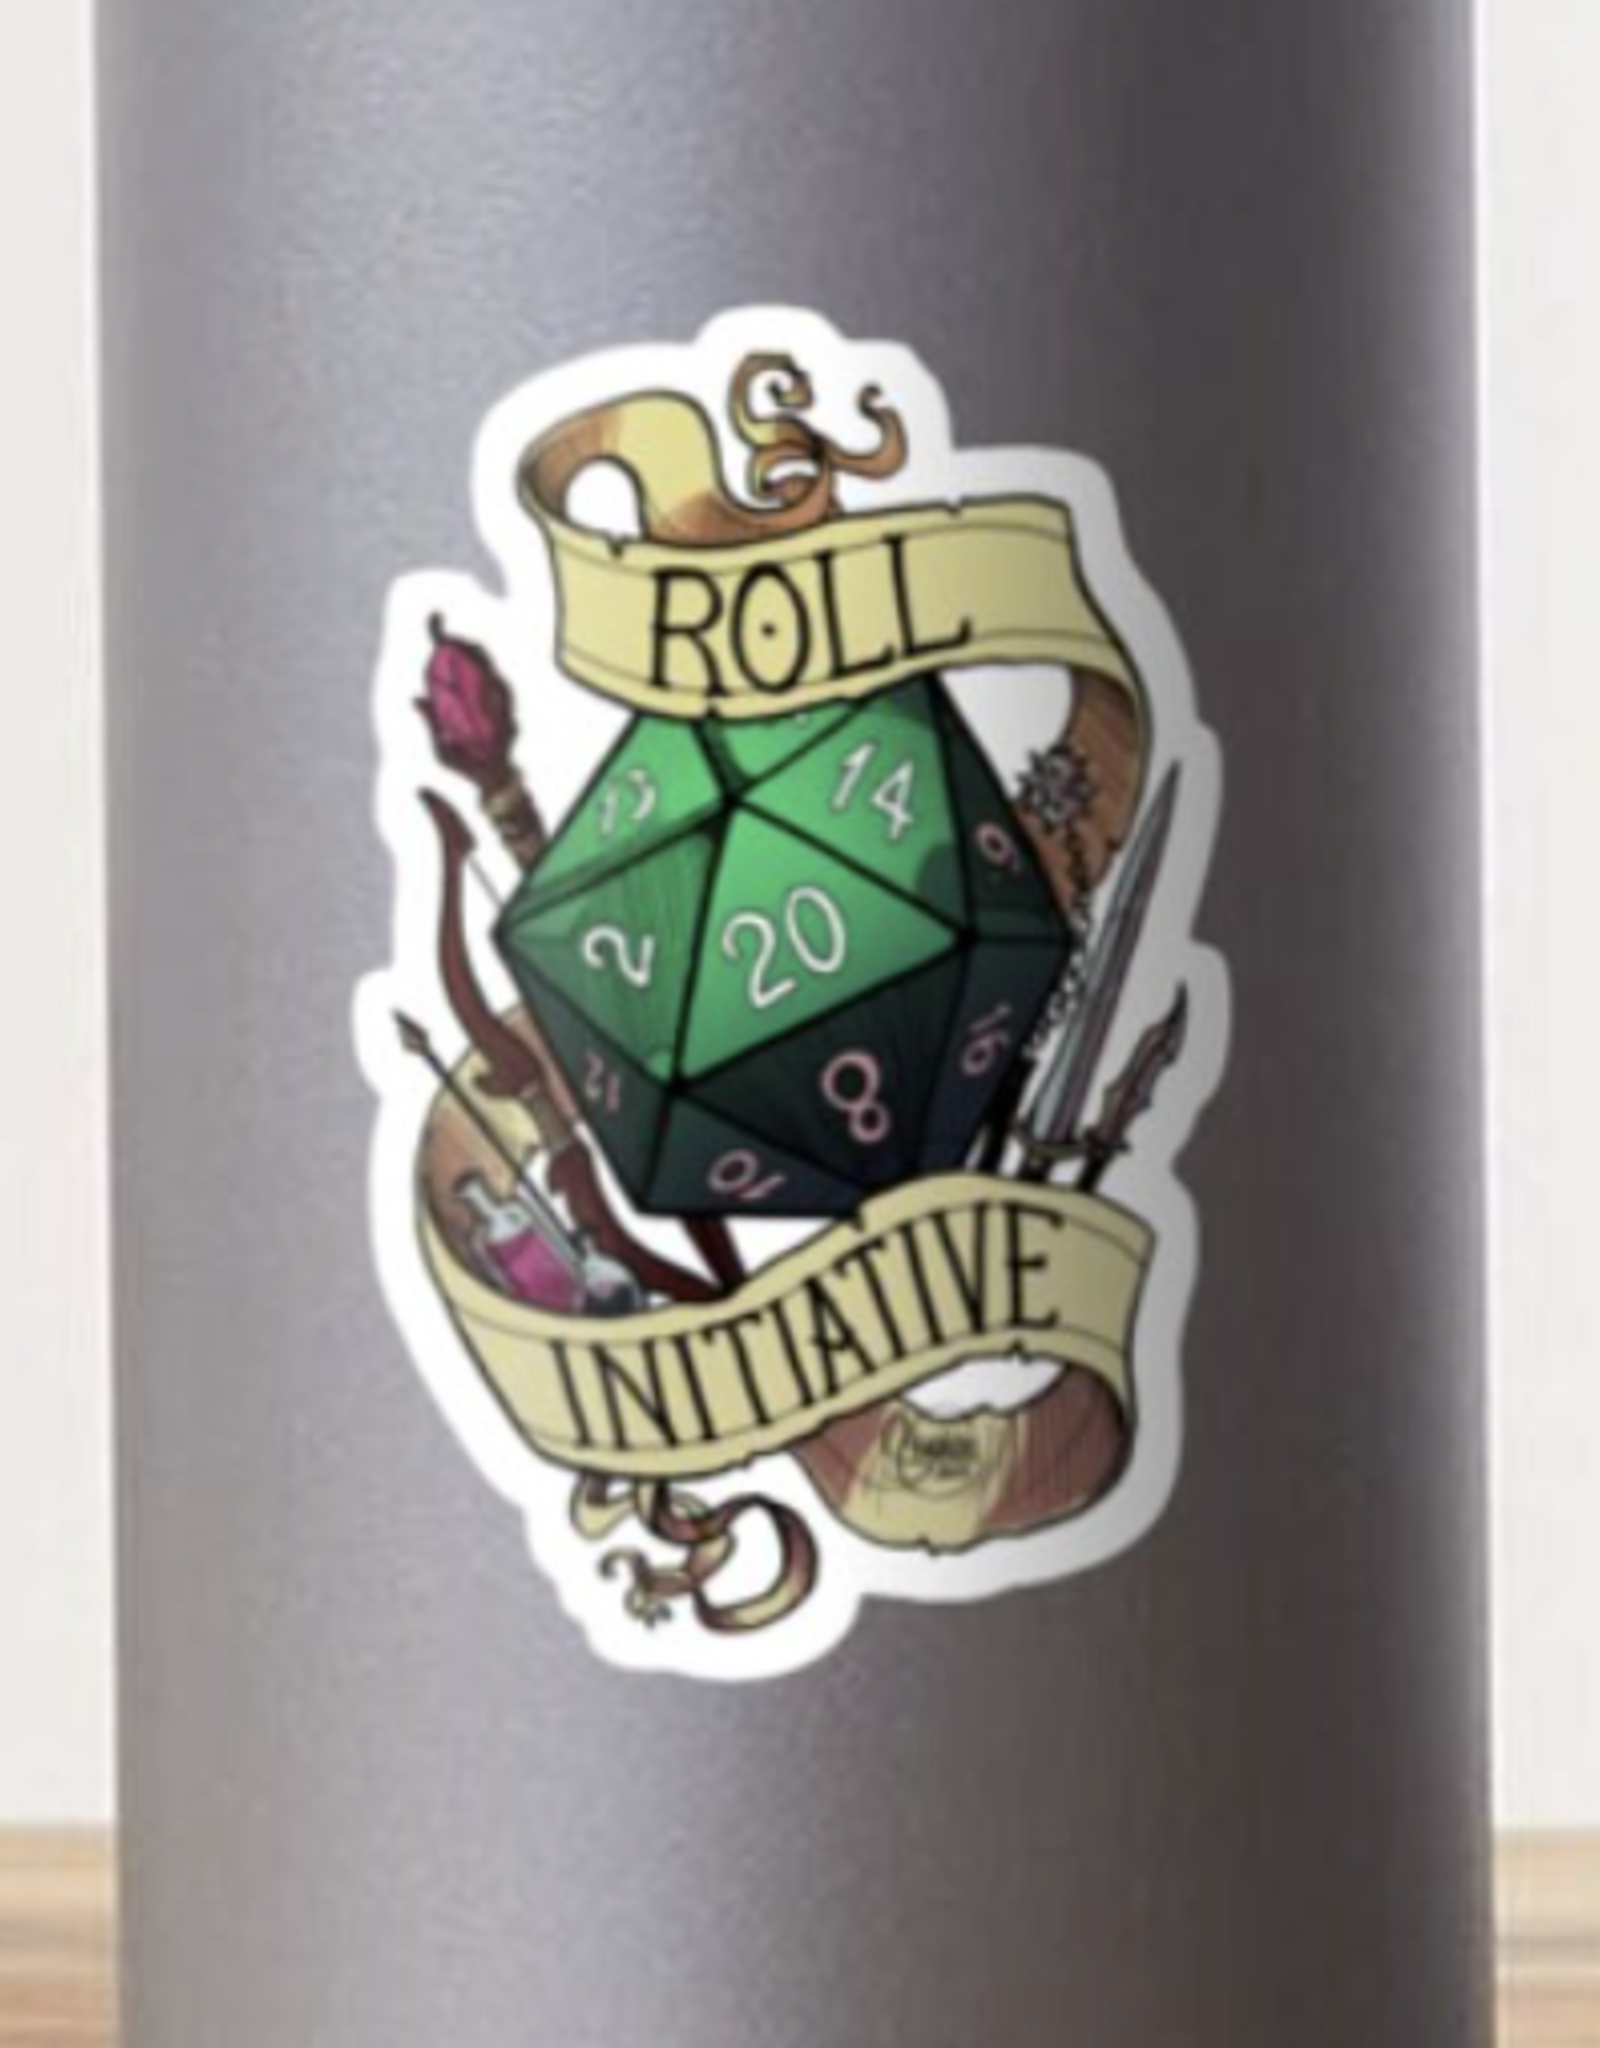 Roll Initiative Sticker